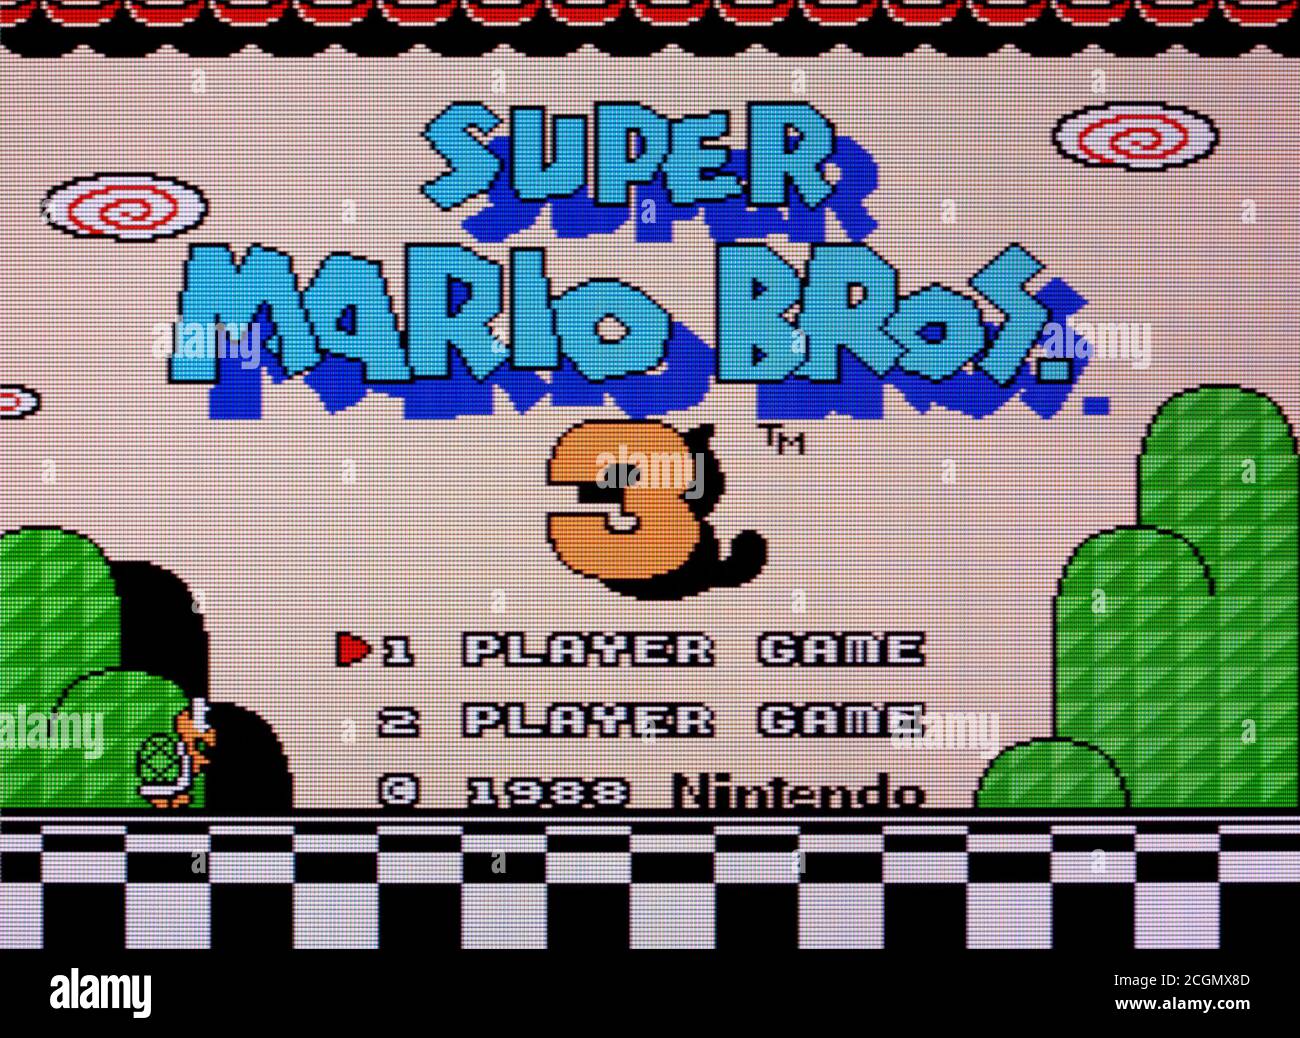 Super Mario Bros. 3 - Nintendo Entertainment System - NES Videogame - nur  zur redaktionellen Verwendung Stockfotografie - Alamy